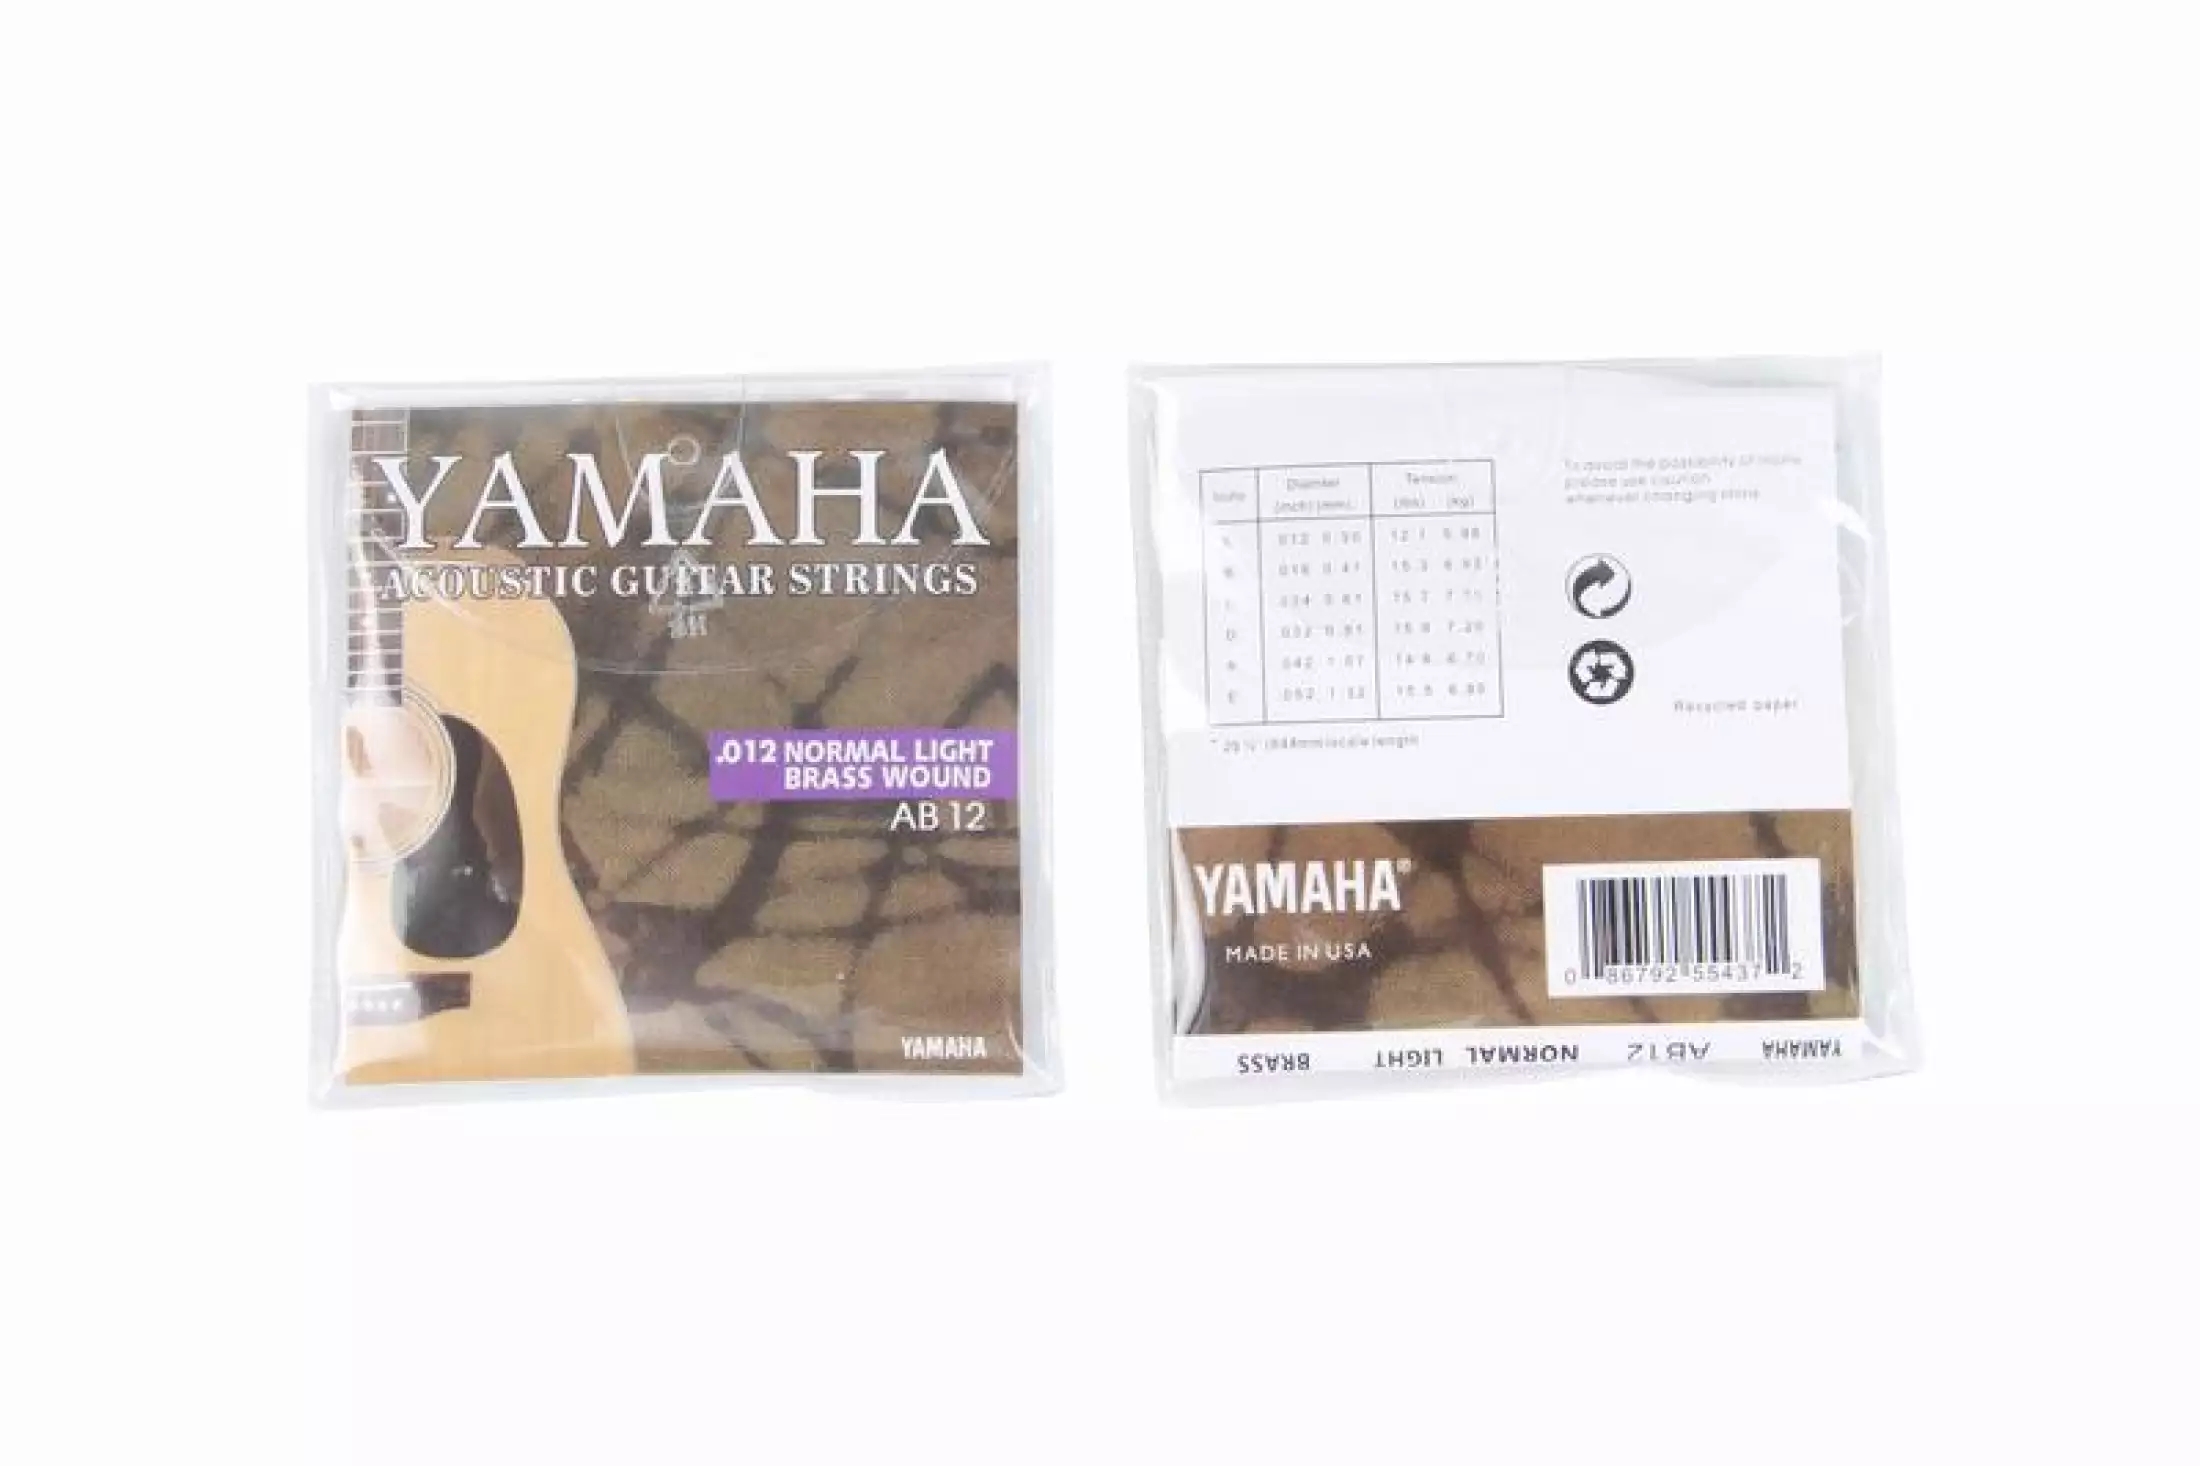 รูปภาพรายละเอียดของ 6 ชิ้น Yamaha สายกีต้าร์โปร่ง Pro ระดับเคลือบนาโน 85/15 บรอนซ์ 0.12 แสงปกติทองเหลืองวัดบาดแผล AB12